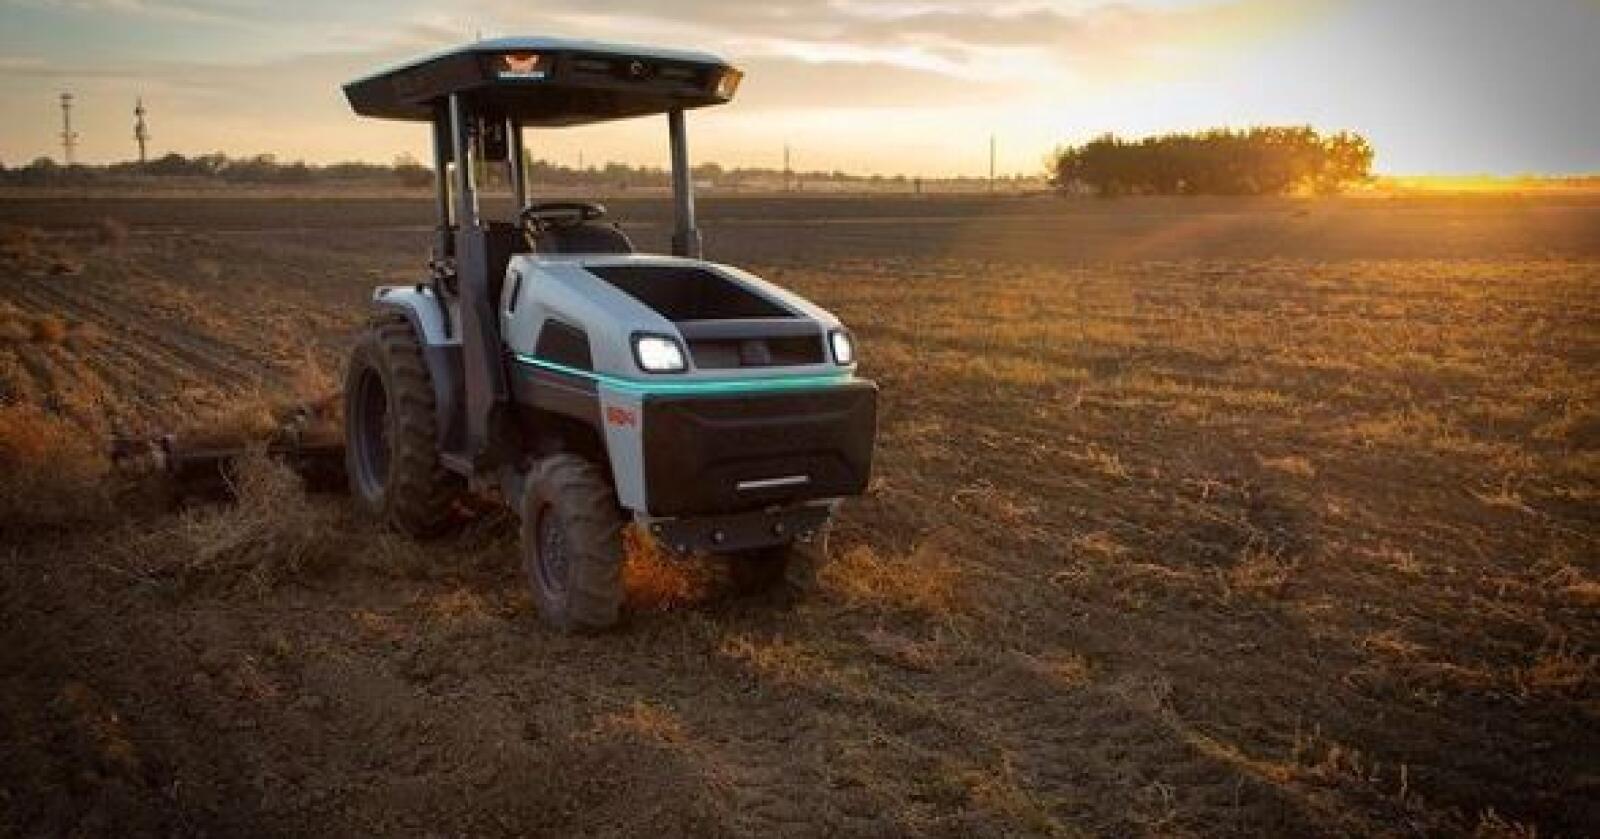 Autonom: Monarch har utviklet en selvkjørende, helt elektrisk traktor. Nå kjøper CNH seg inn i selskapet.